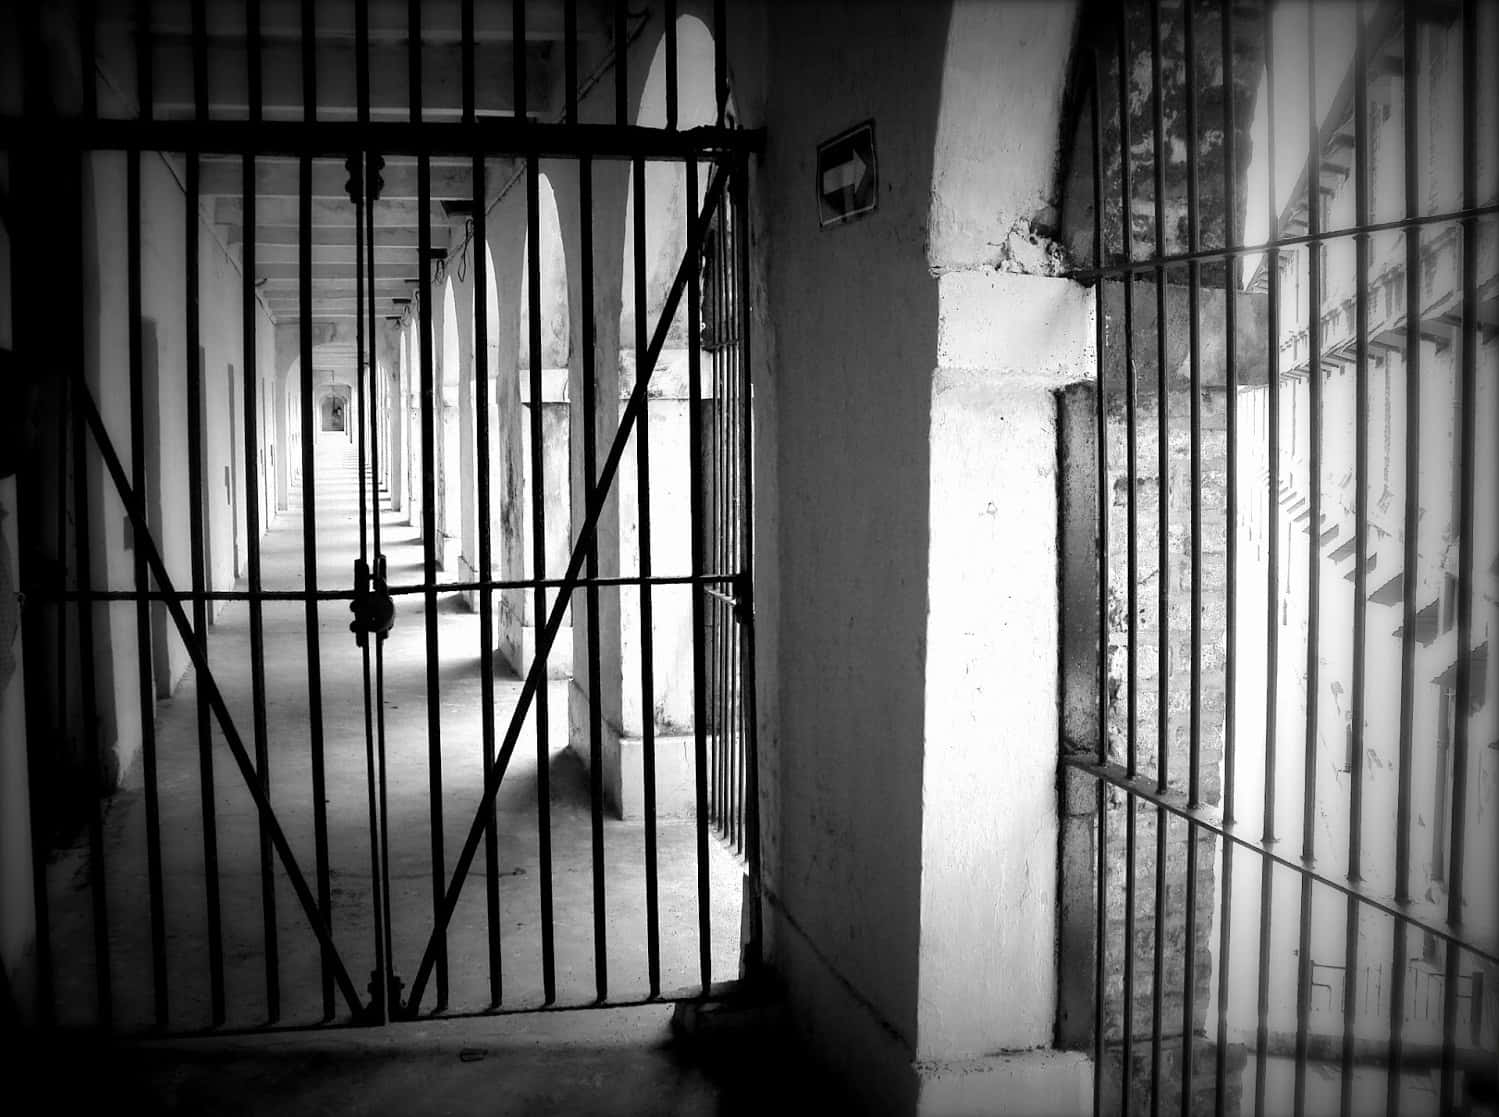 Umafoto Em Preto E Branco De Um Portão De Prisão.